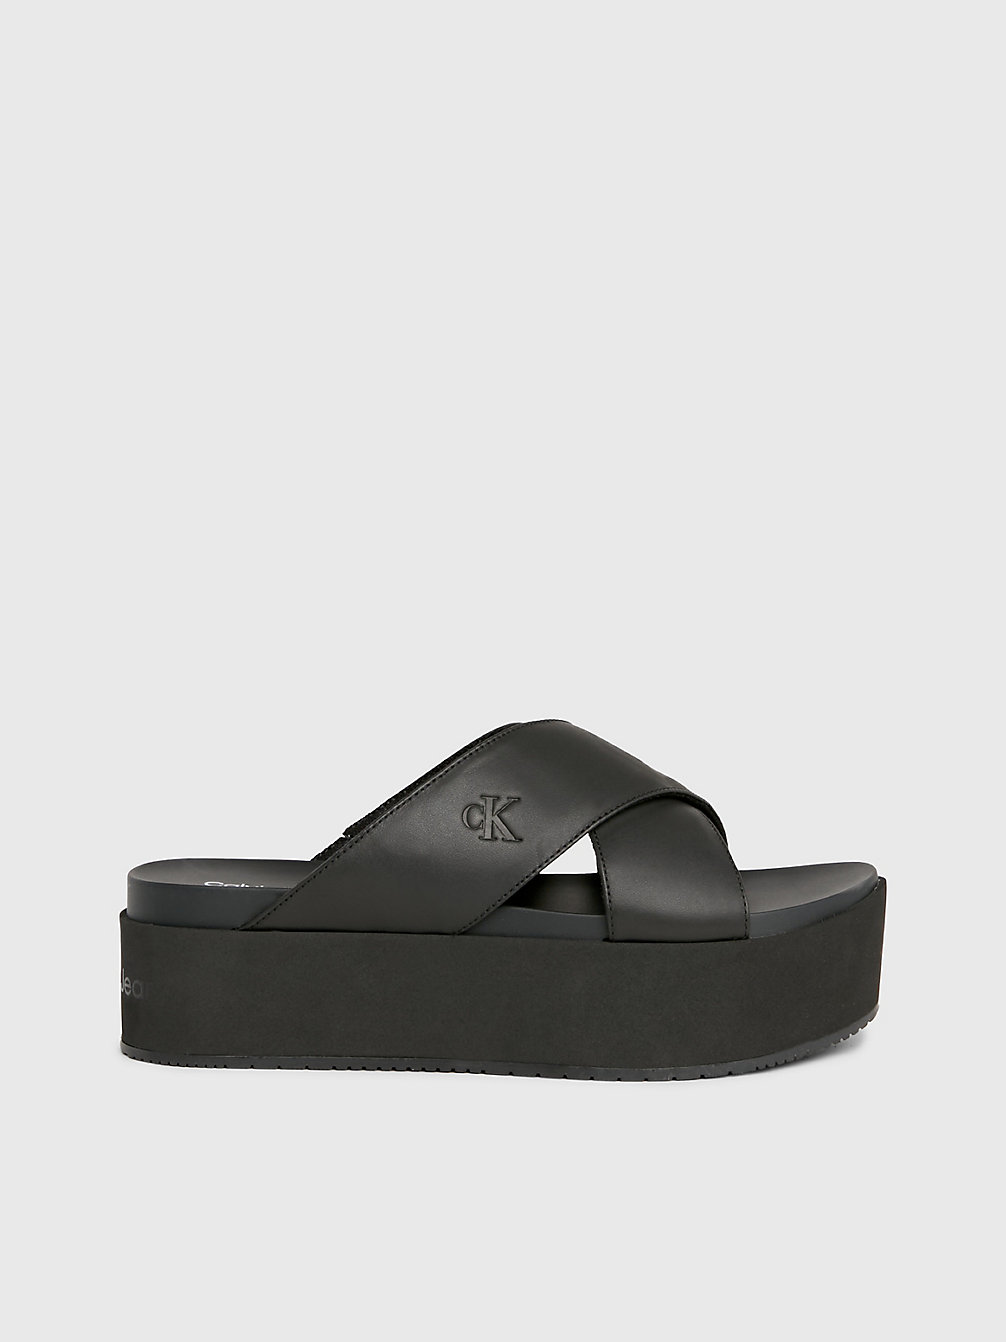 TRIPLE BLACK Leather Platform Sandals undefined Women Calvin Klein